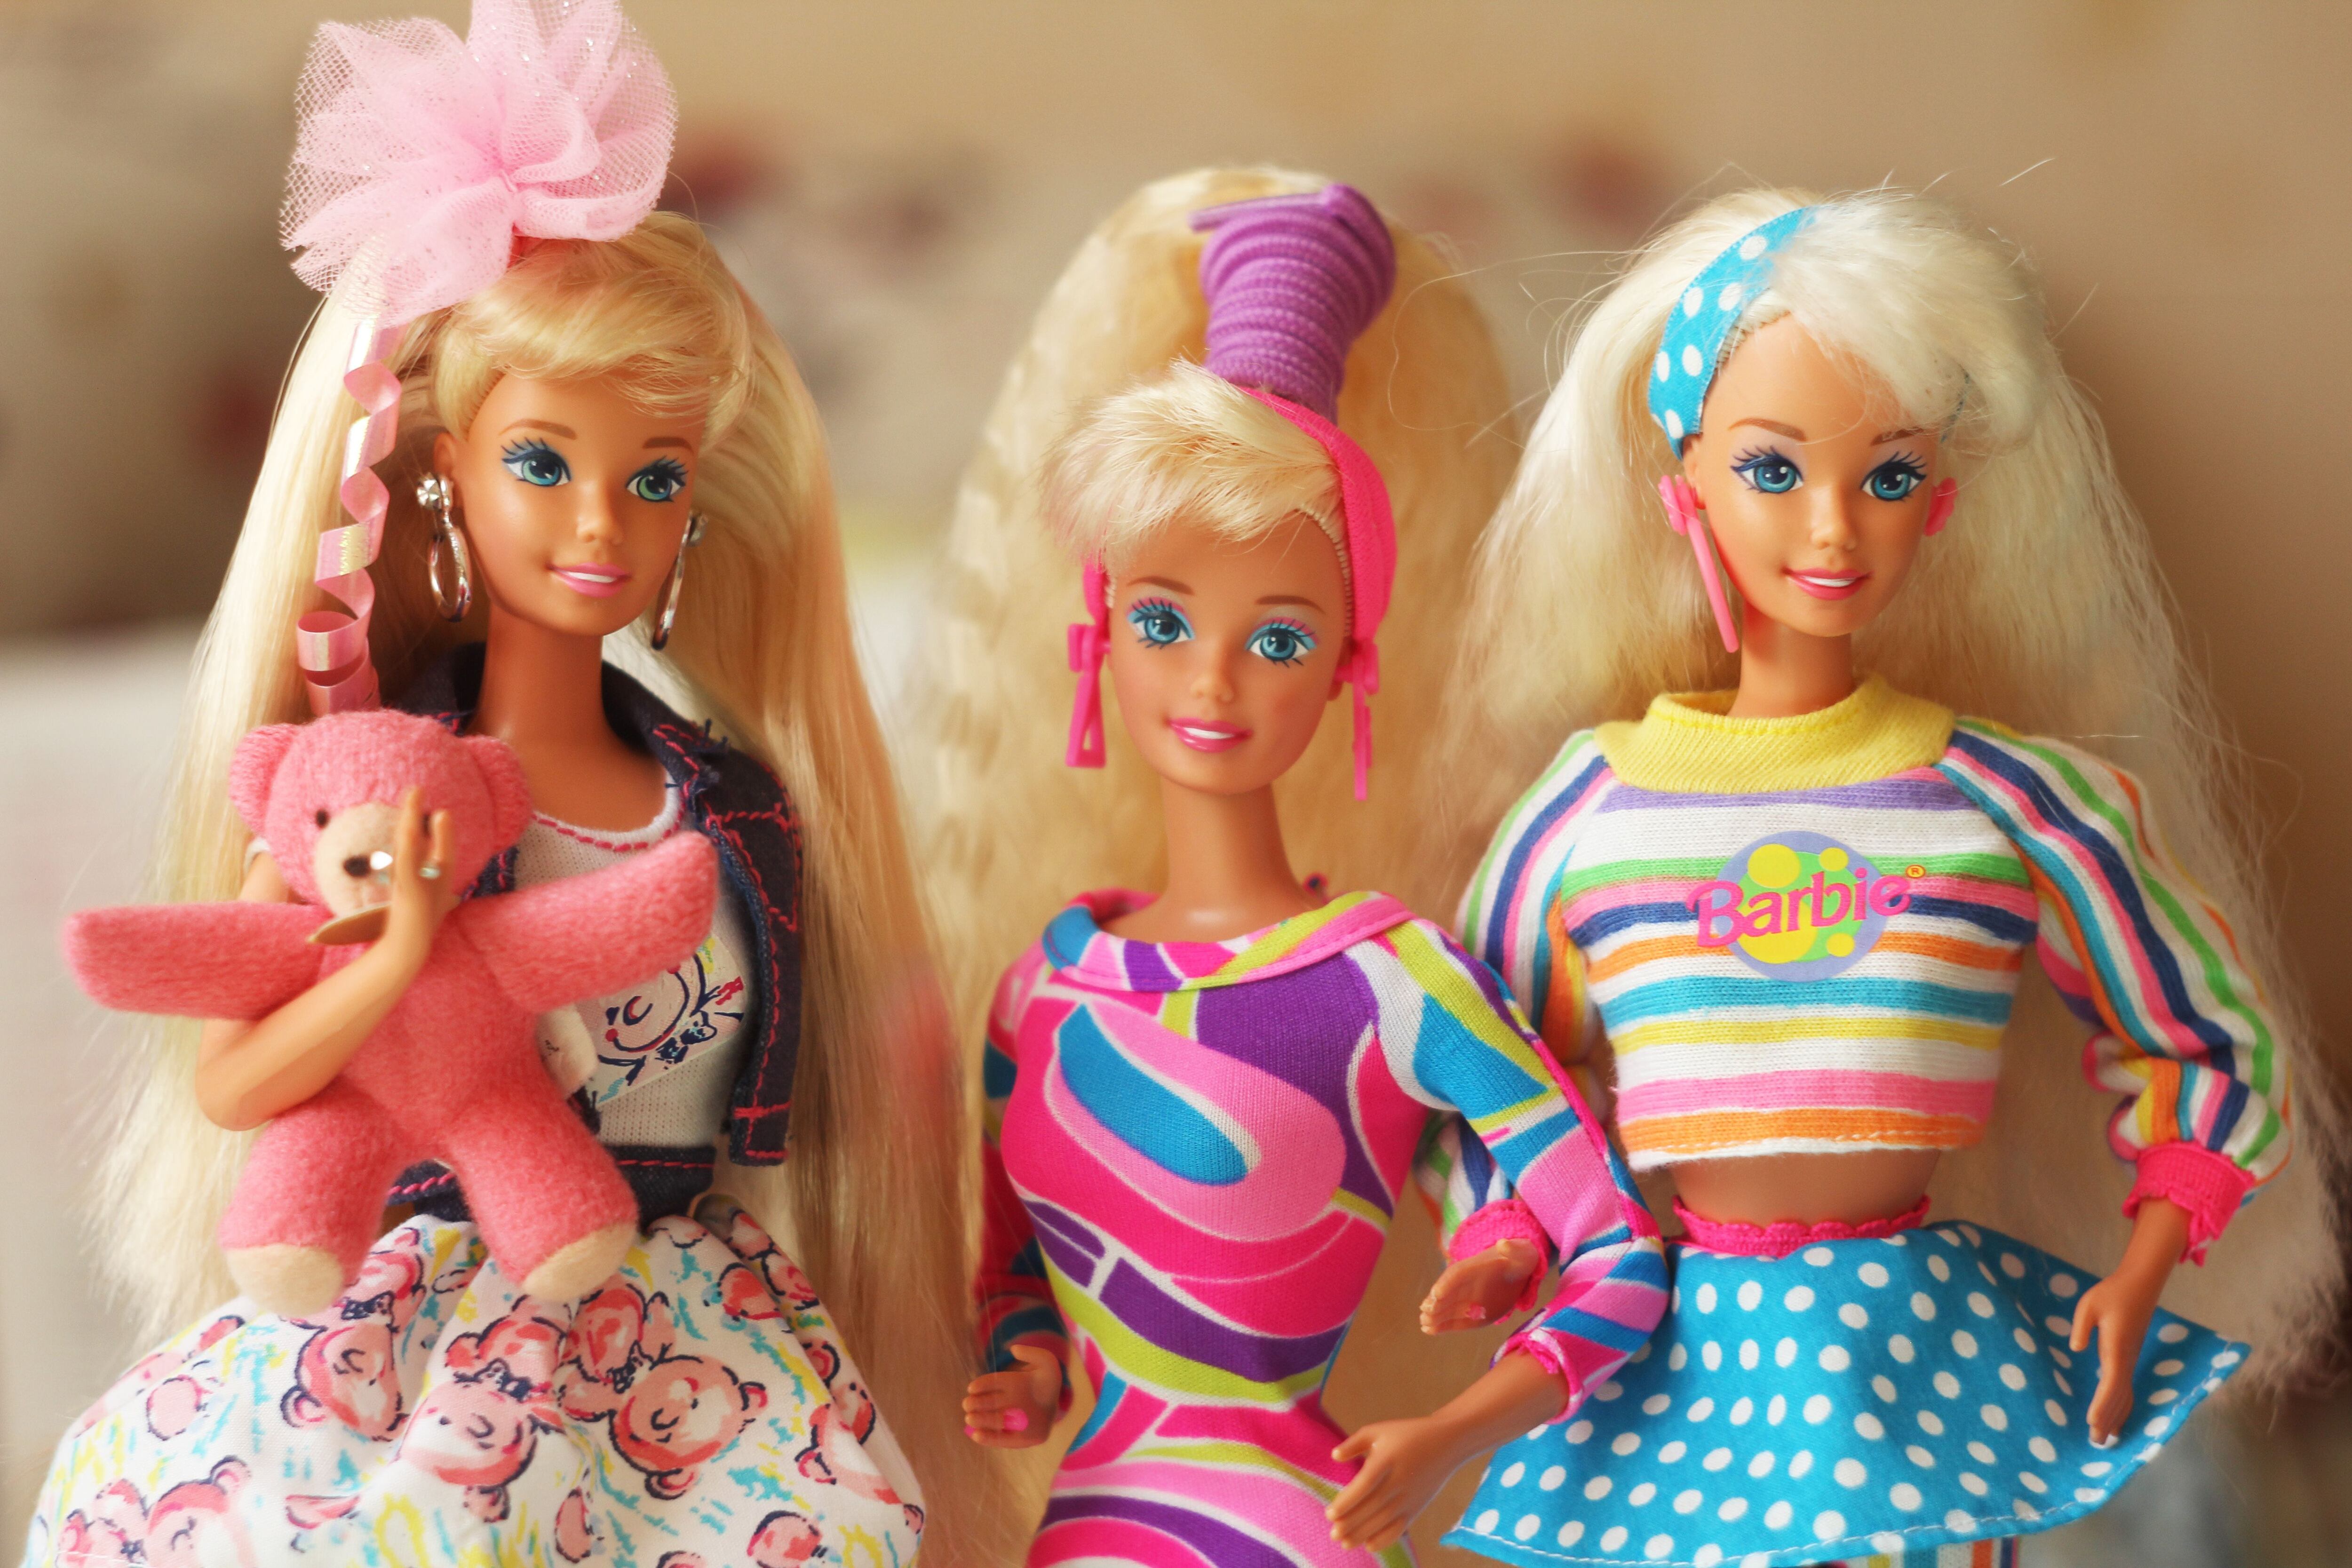 Las muñecas de Barbie se venden en Costa Rica desde hace más de 40 años. Foto: Shutterstock.